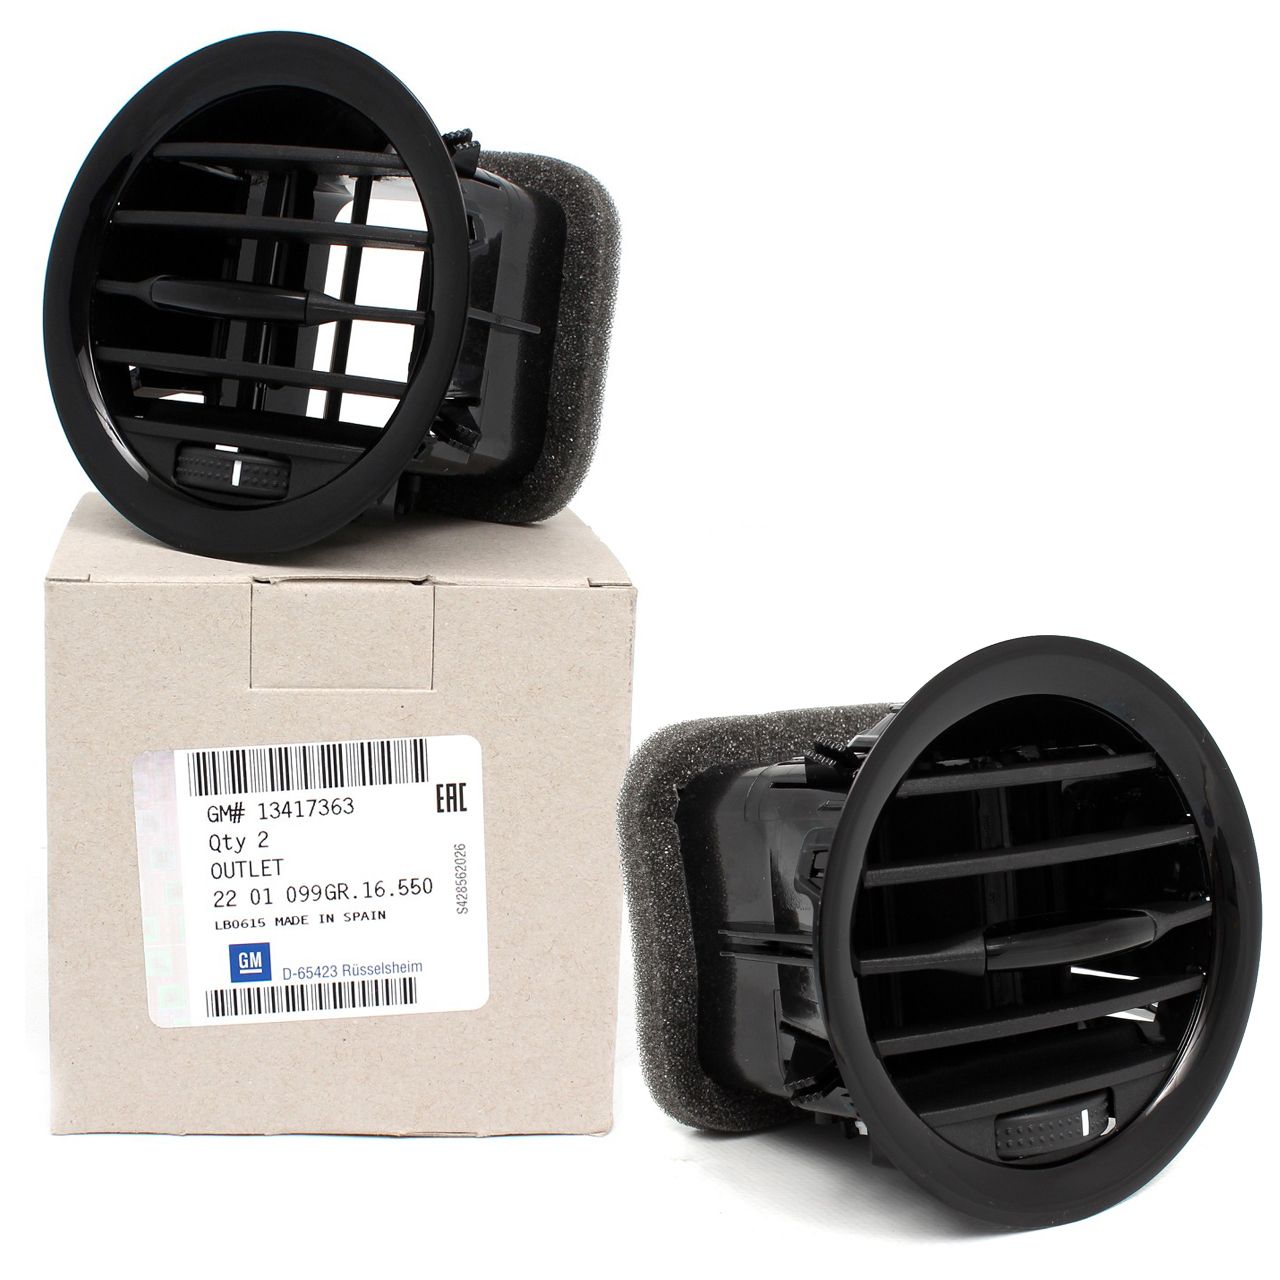 Original air vents / air vents for your car